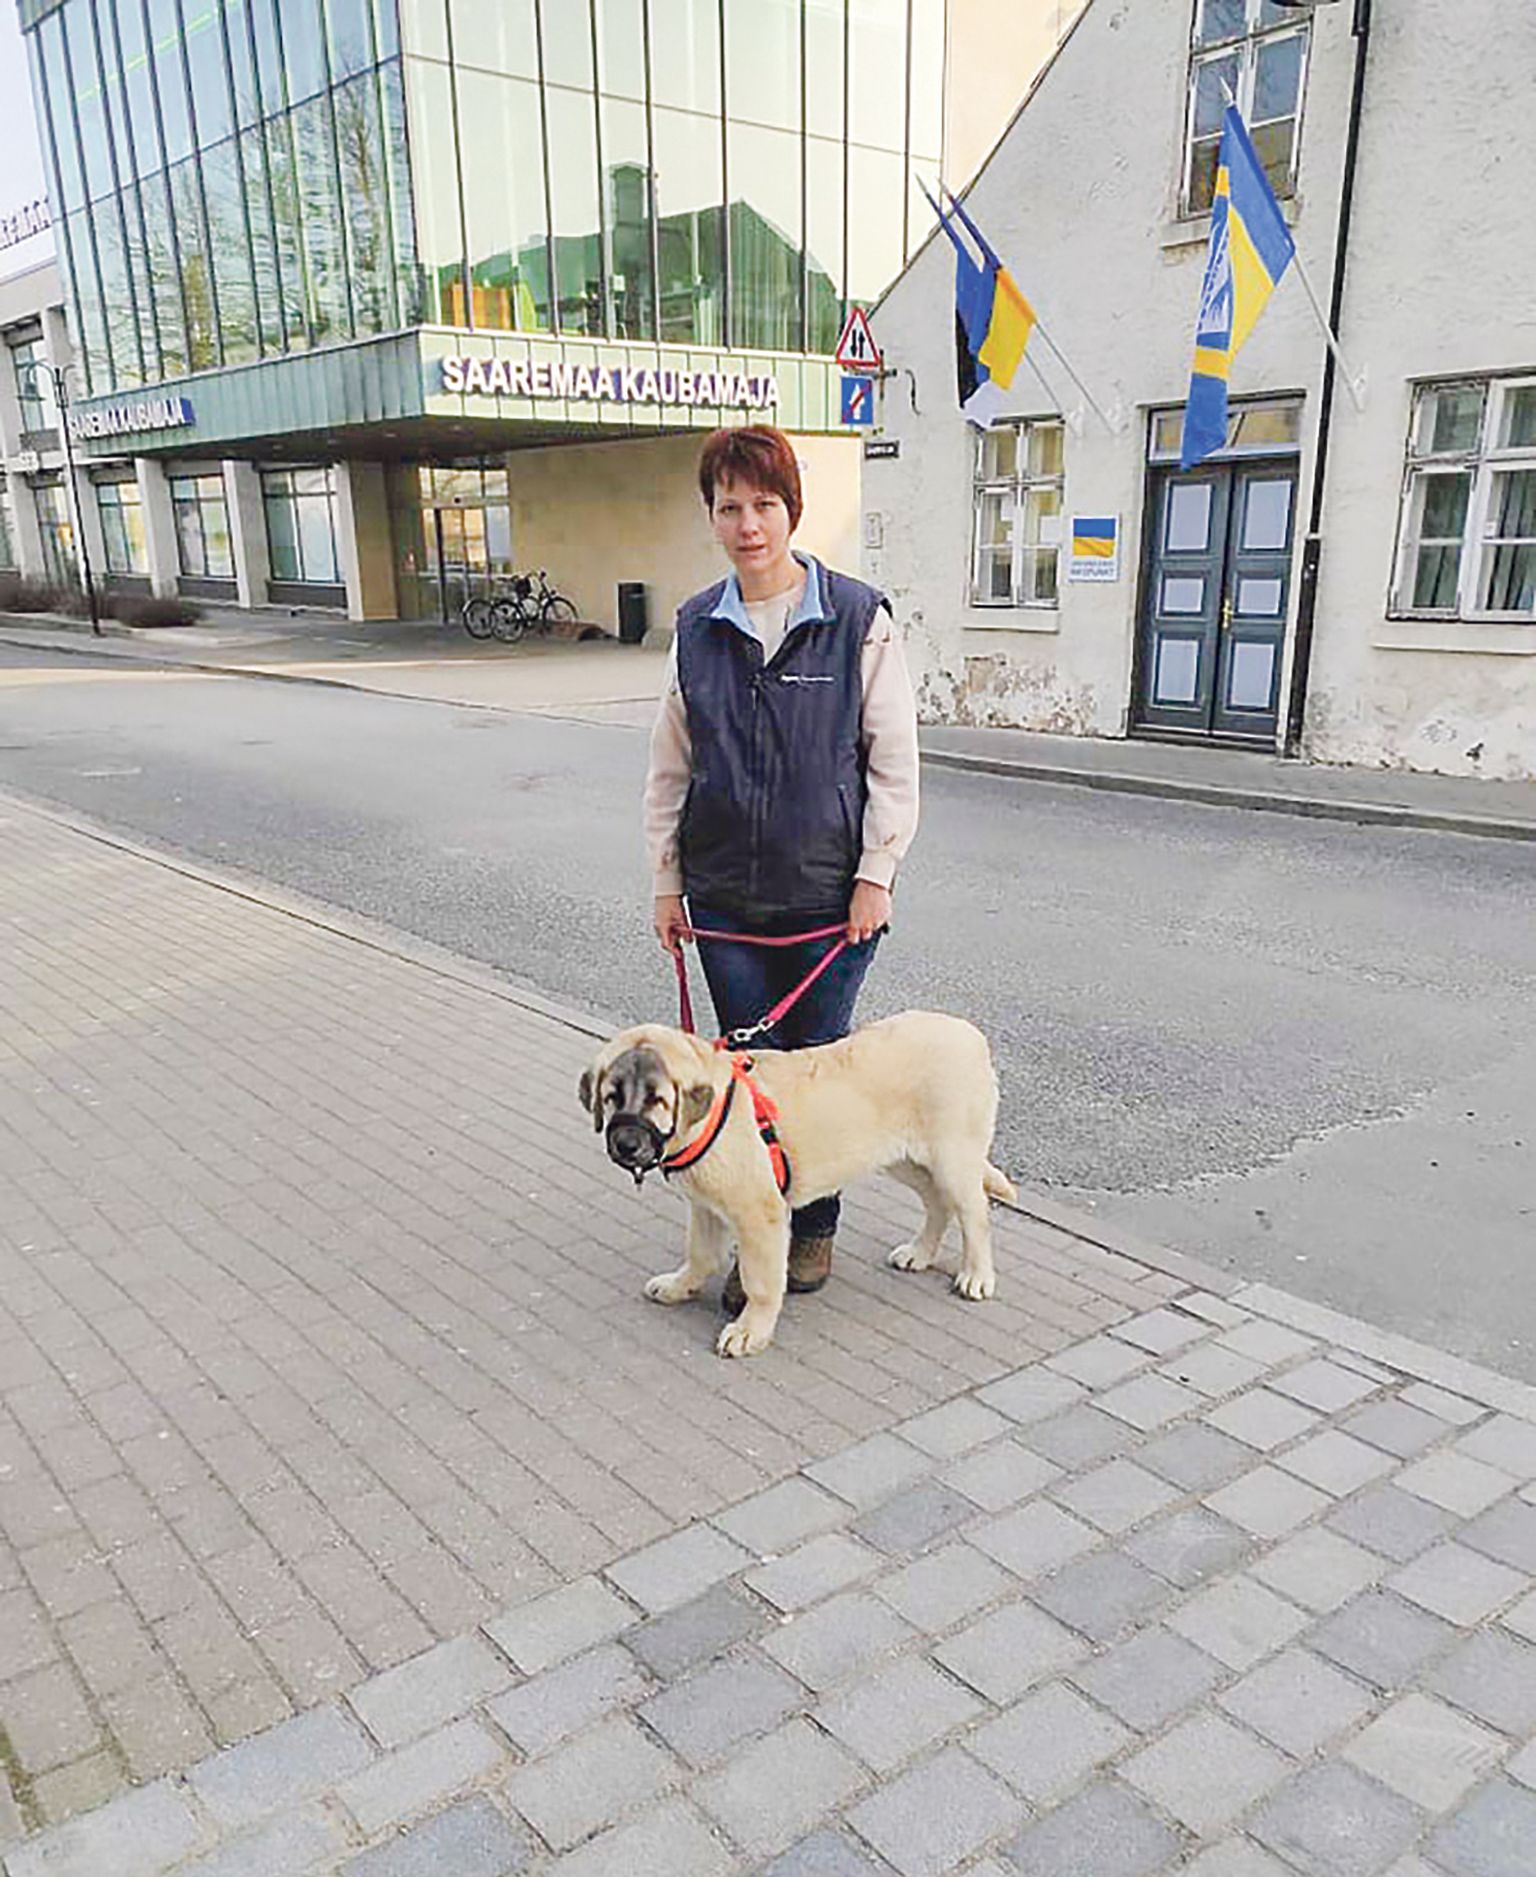 UKRAINAST paari nädala eest Saaremaale saabunud Natalia Rybanova tõi endaga kaasa kümmekond koera, kellest mõned on tänaseks ka uue kodu leidnud.